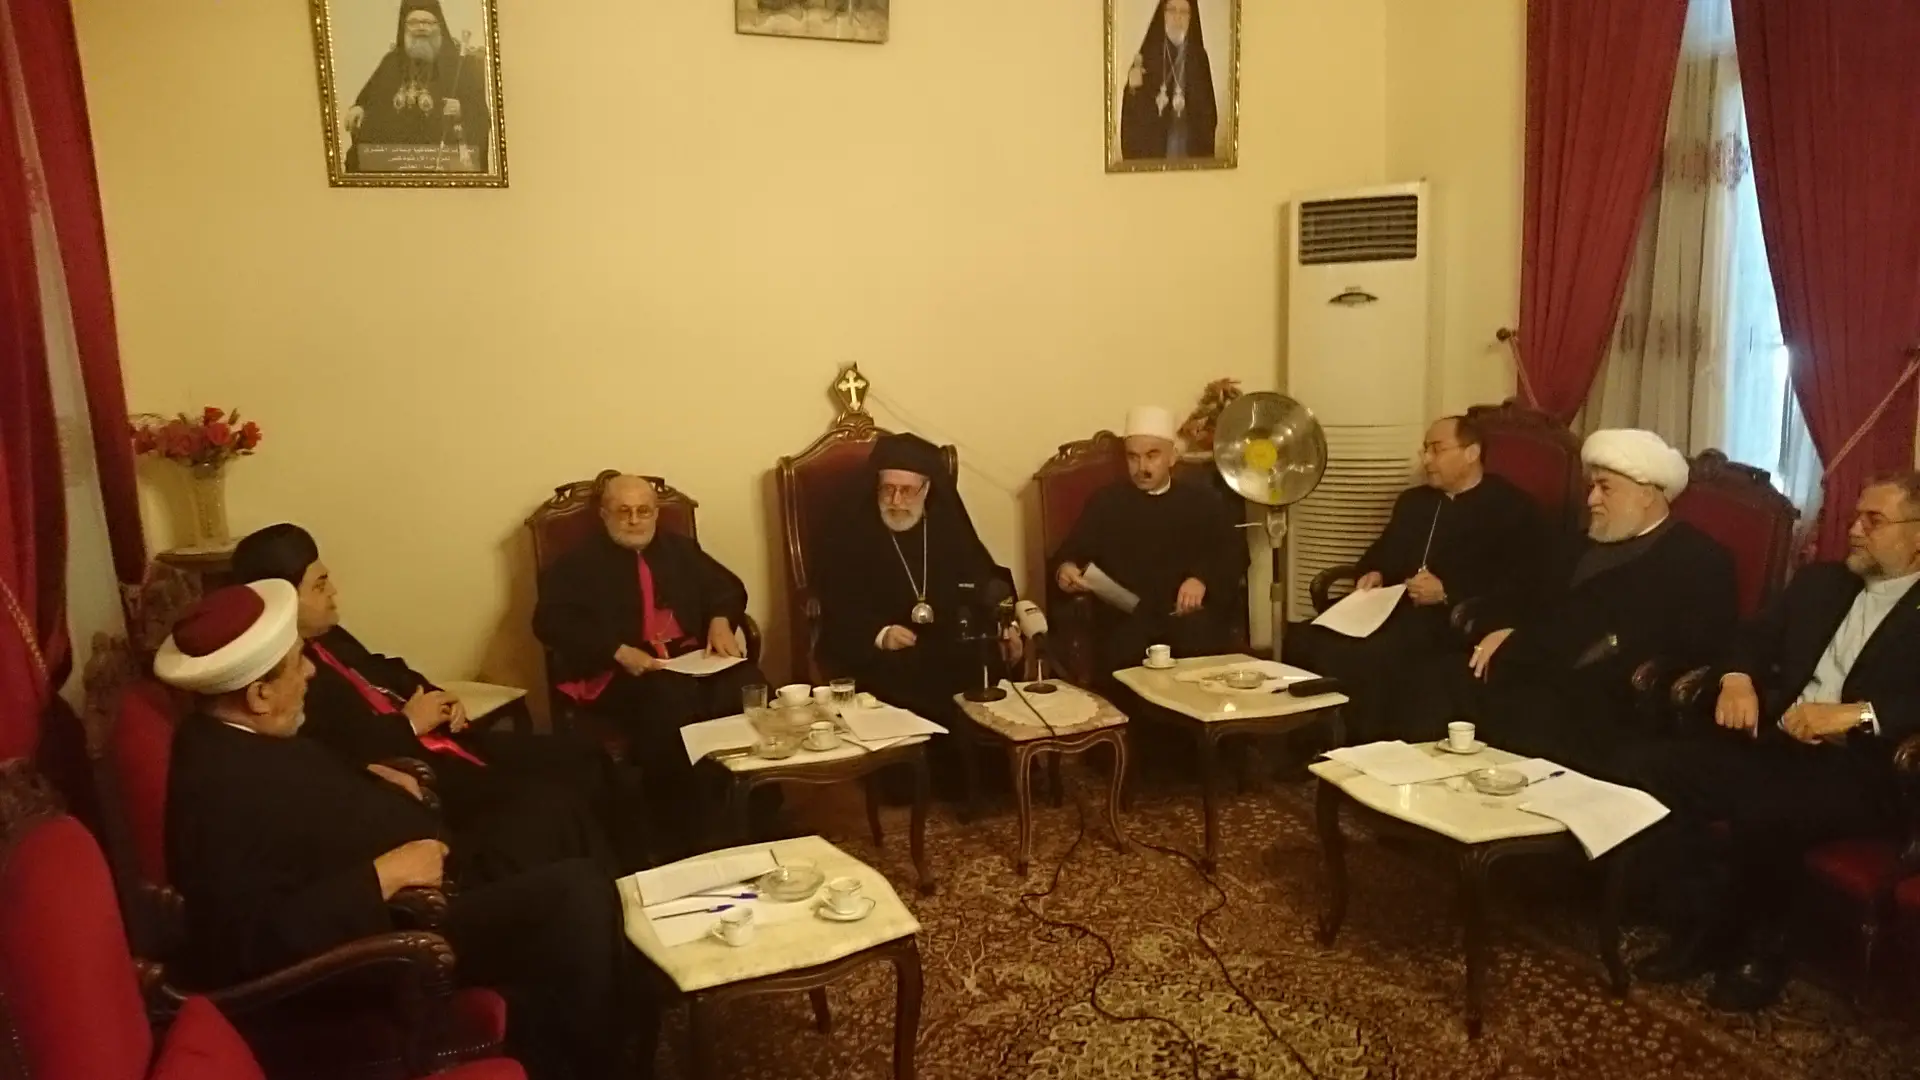  لقاء الرؤساء الطوائف الروحية للجنوب في مطرانية مرجعيون الاورثوذكس